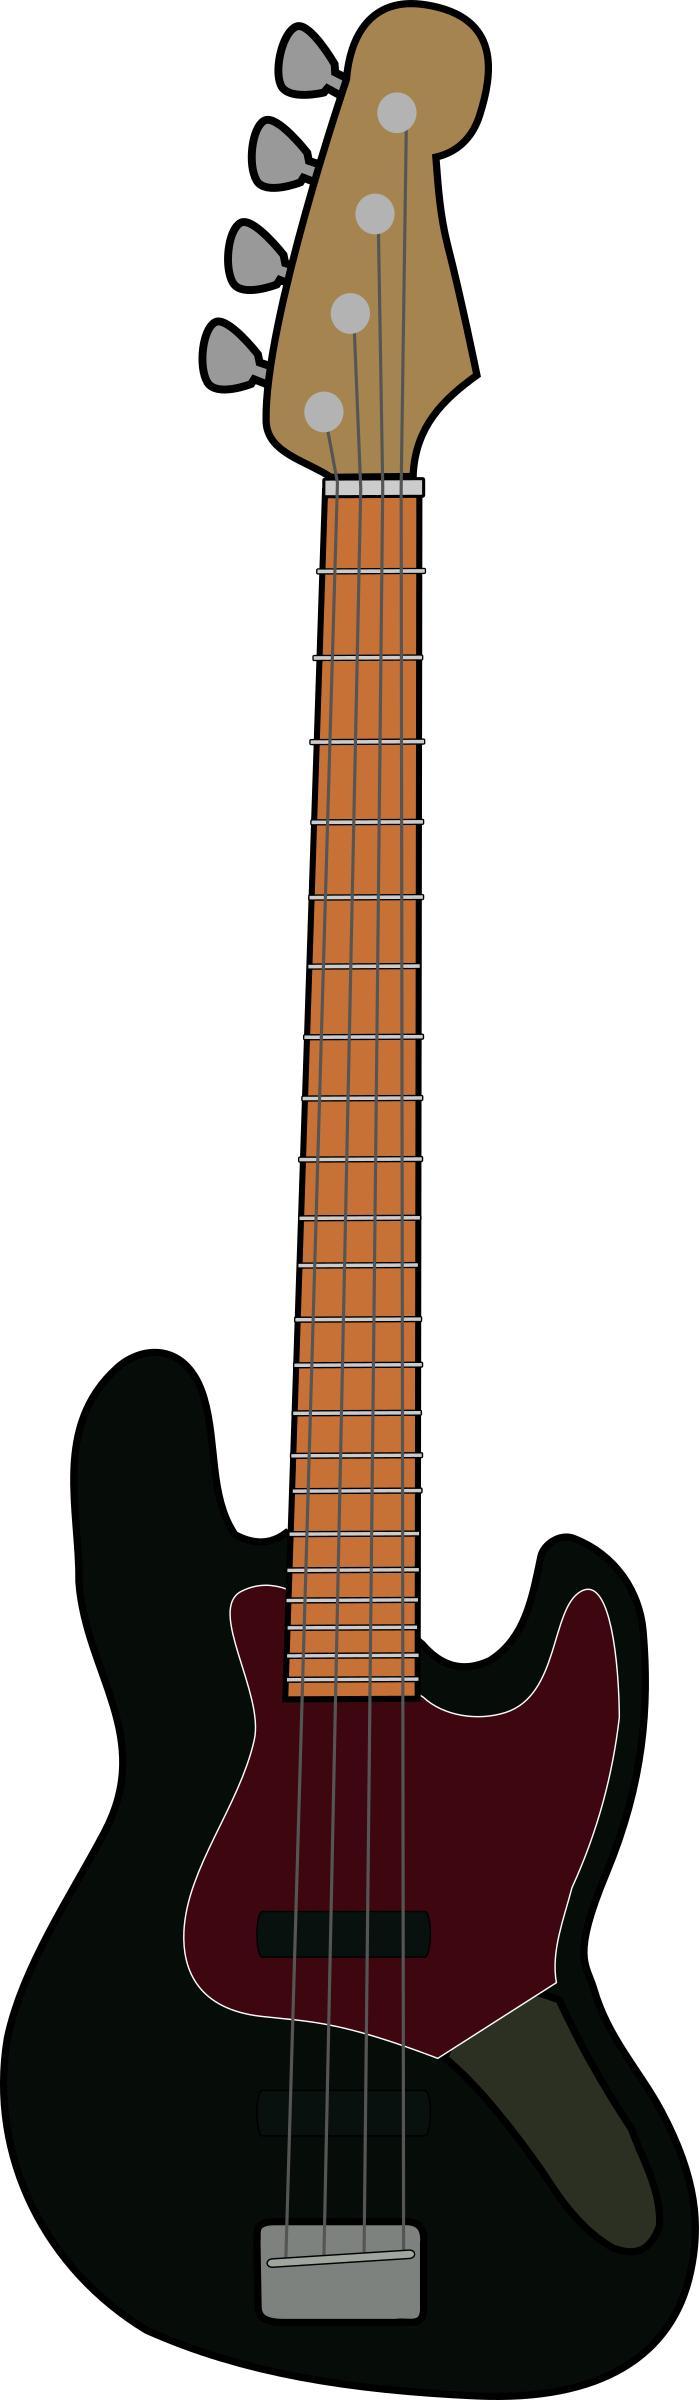 Fender Jazz Bass png transparent